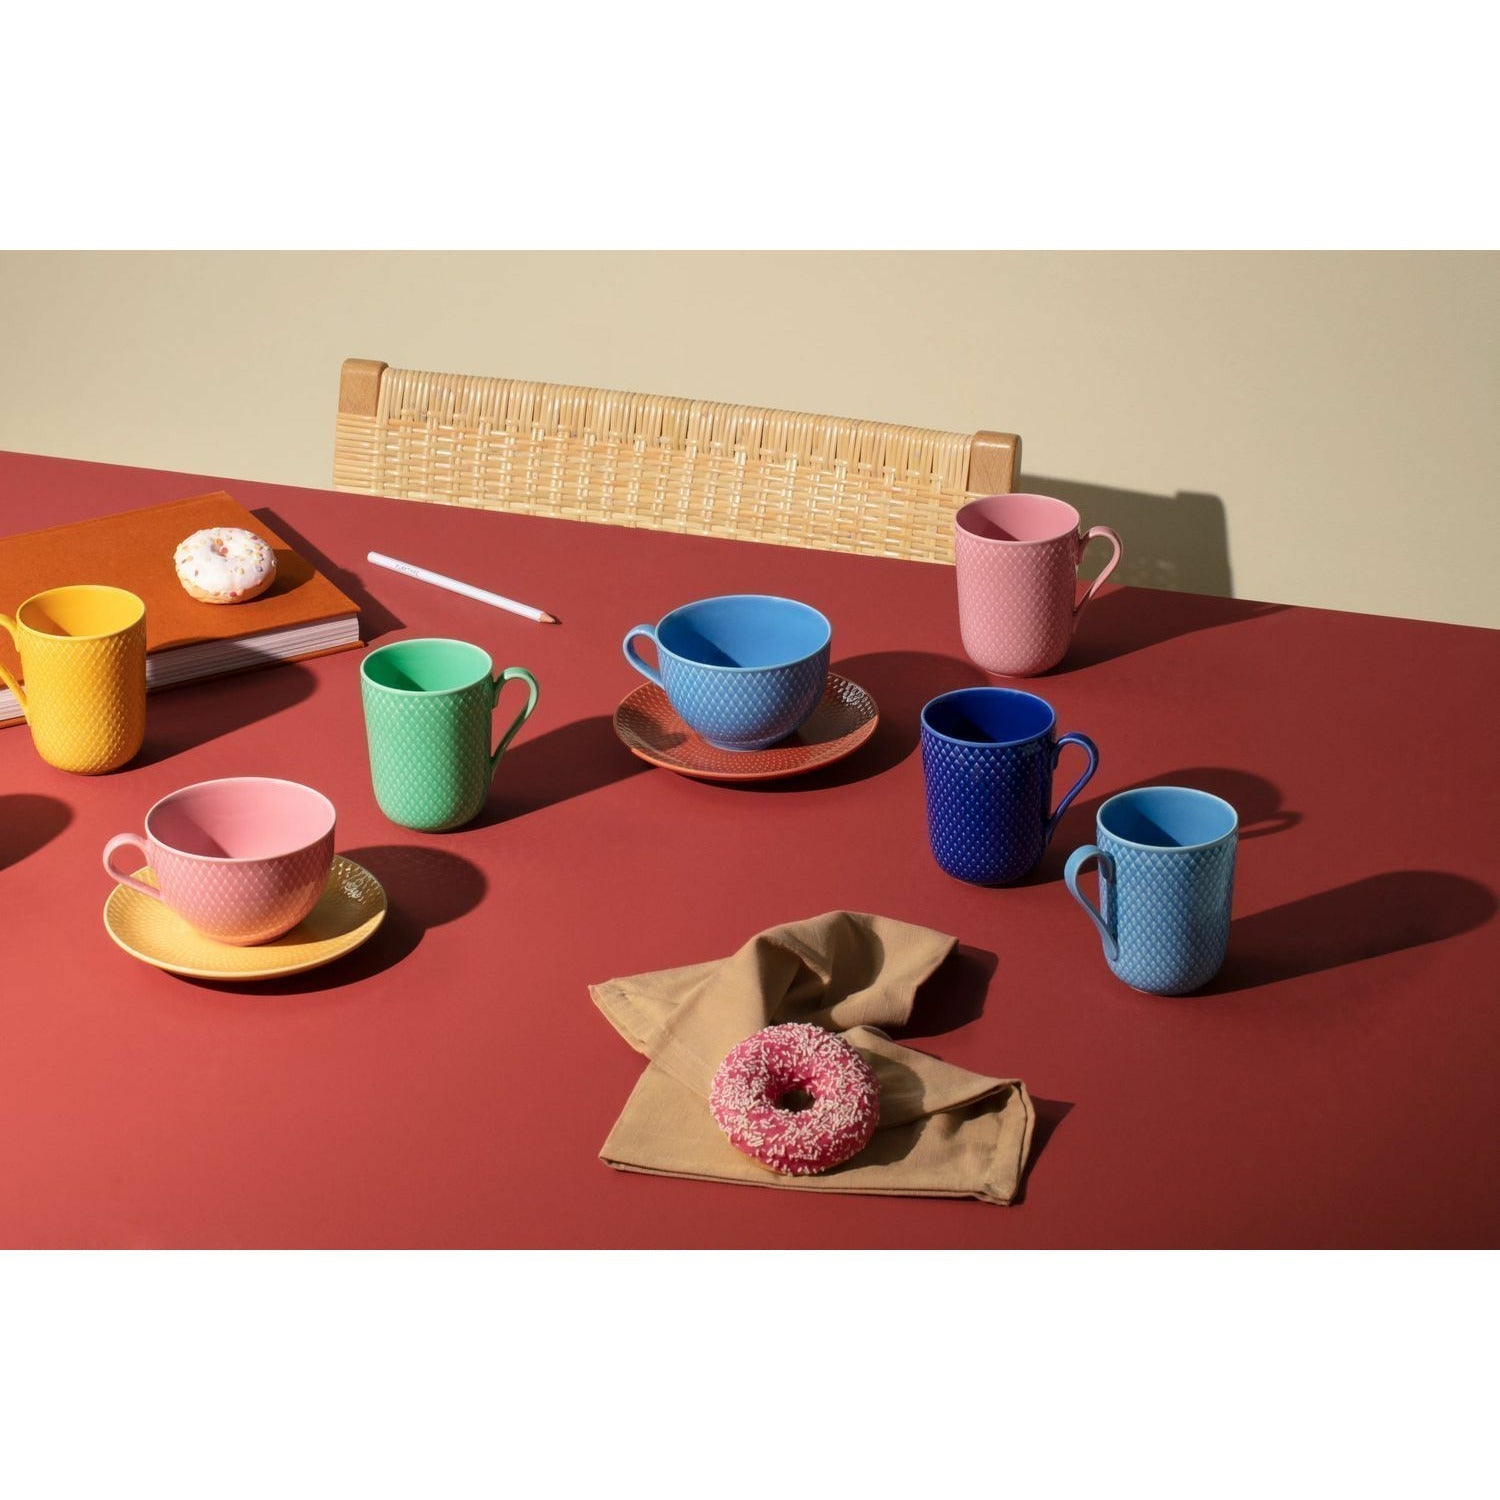 Lyngby Porcelæn Rhombe Color Tea Cup s talířem, modrá/terakota